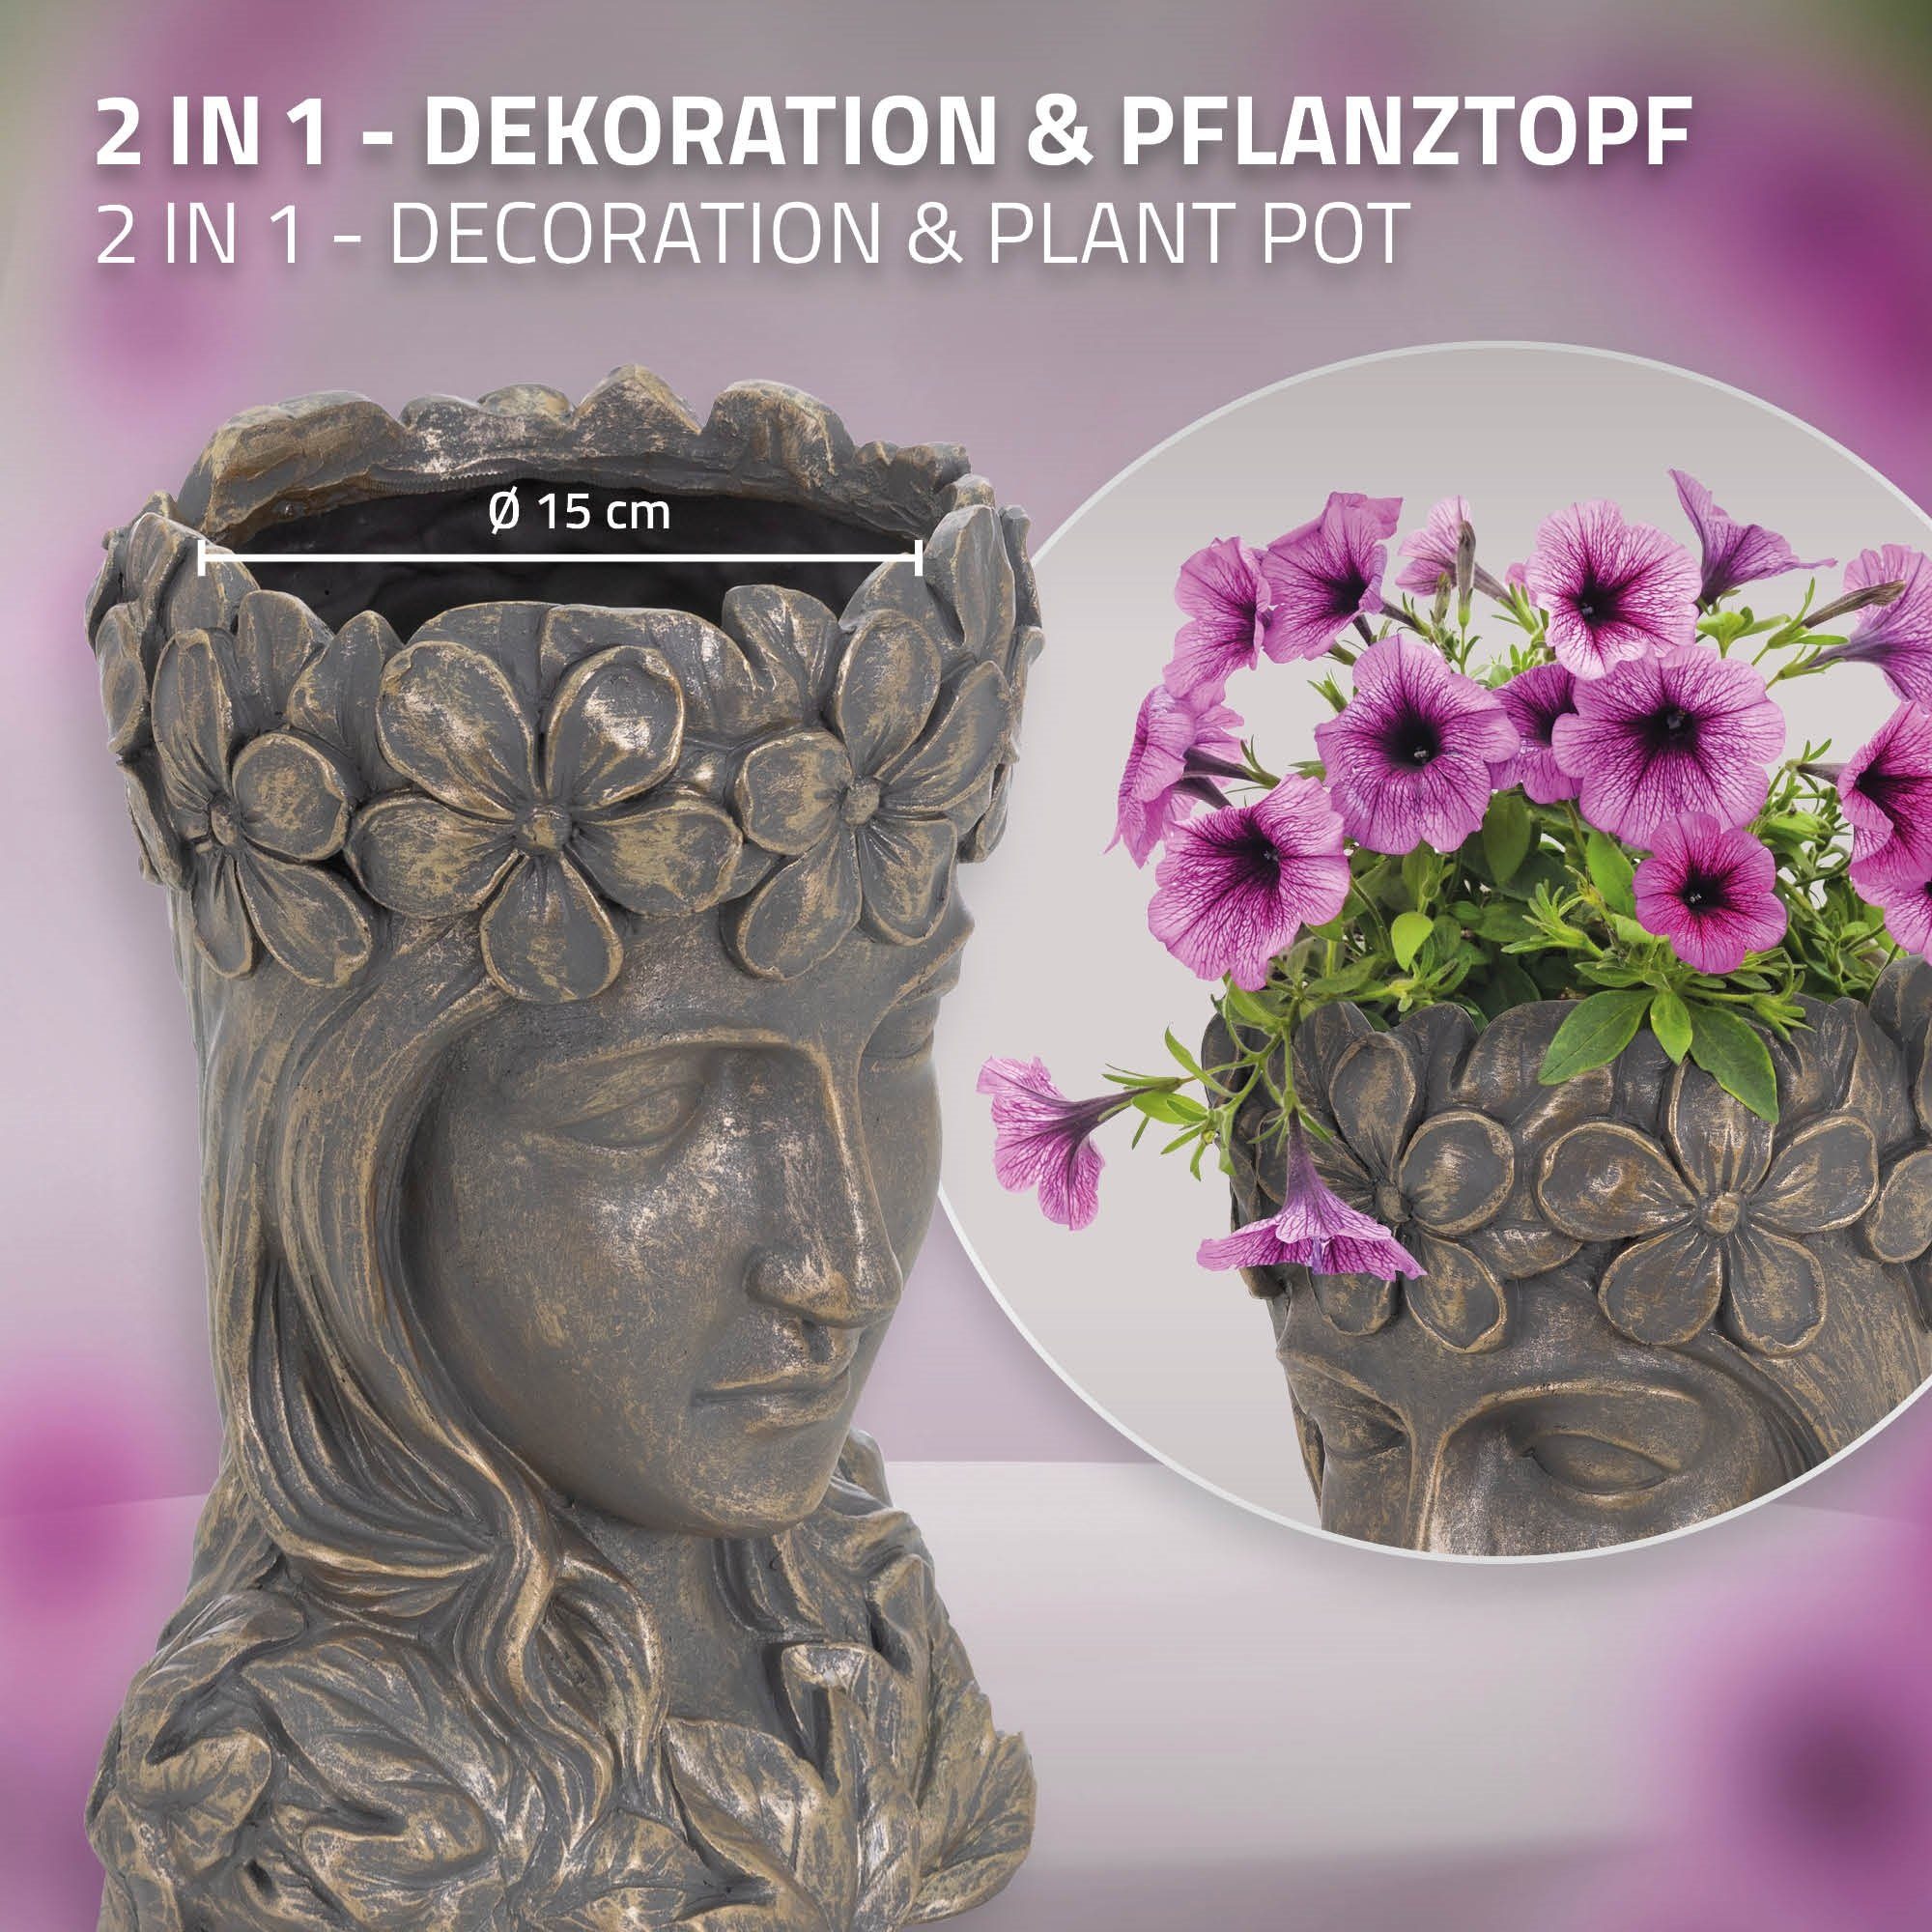 ML-DESIGN Statue Groß Büste Innen/Außen Groß Blumentopf Bronze Pflanztopf Gesicht, Kunstharz Dame cm Skulptur Frauenkopf 21x16x32 Figur